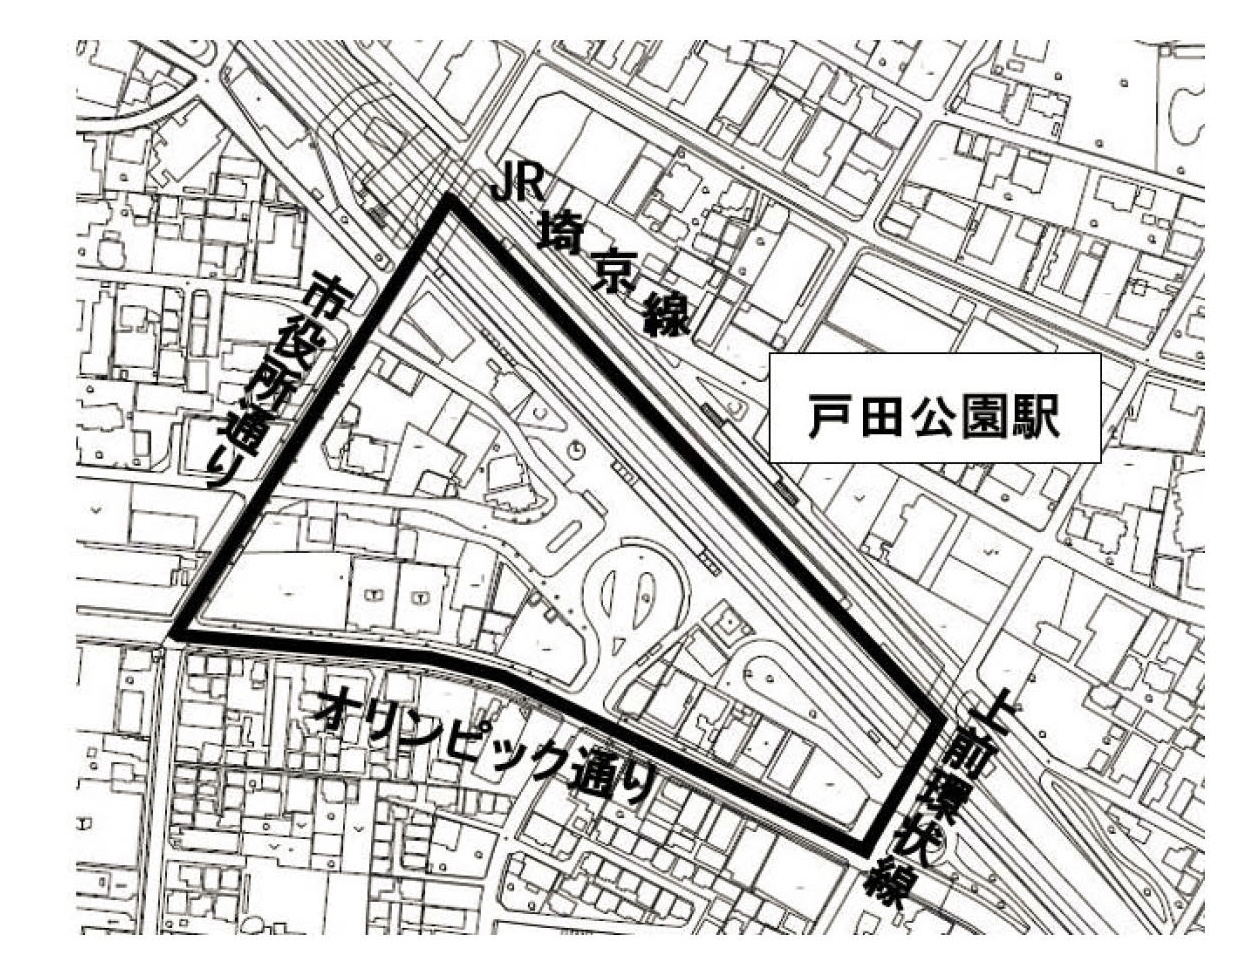 戸田公園西口駅前区域図